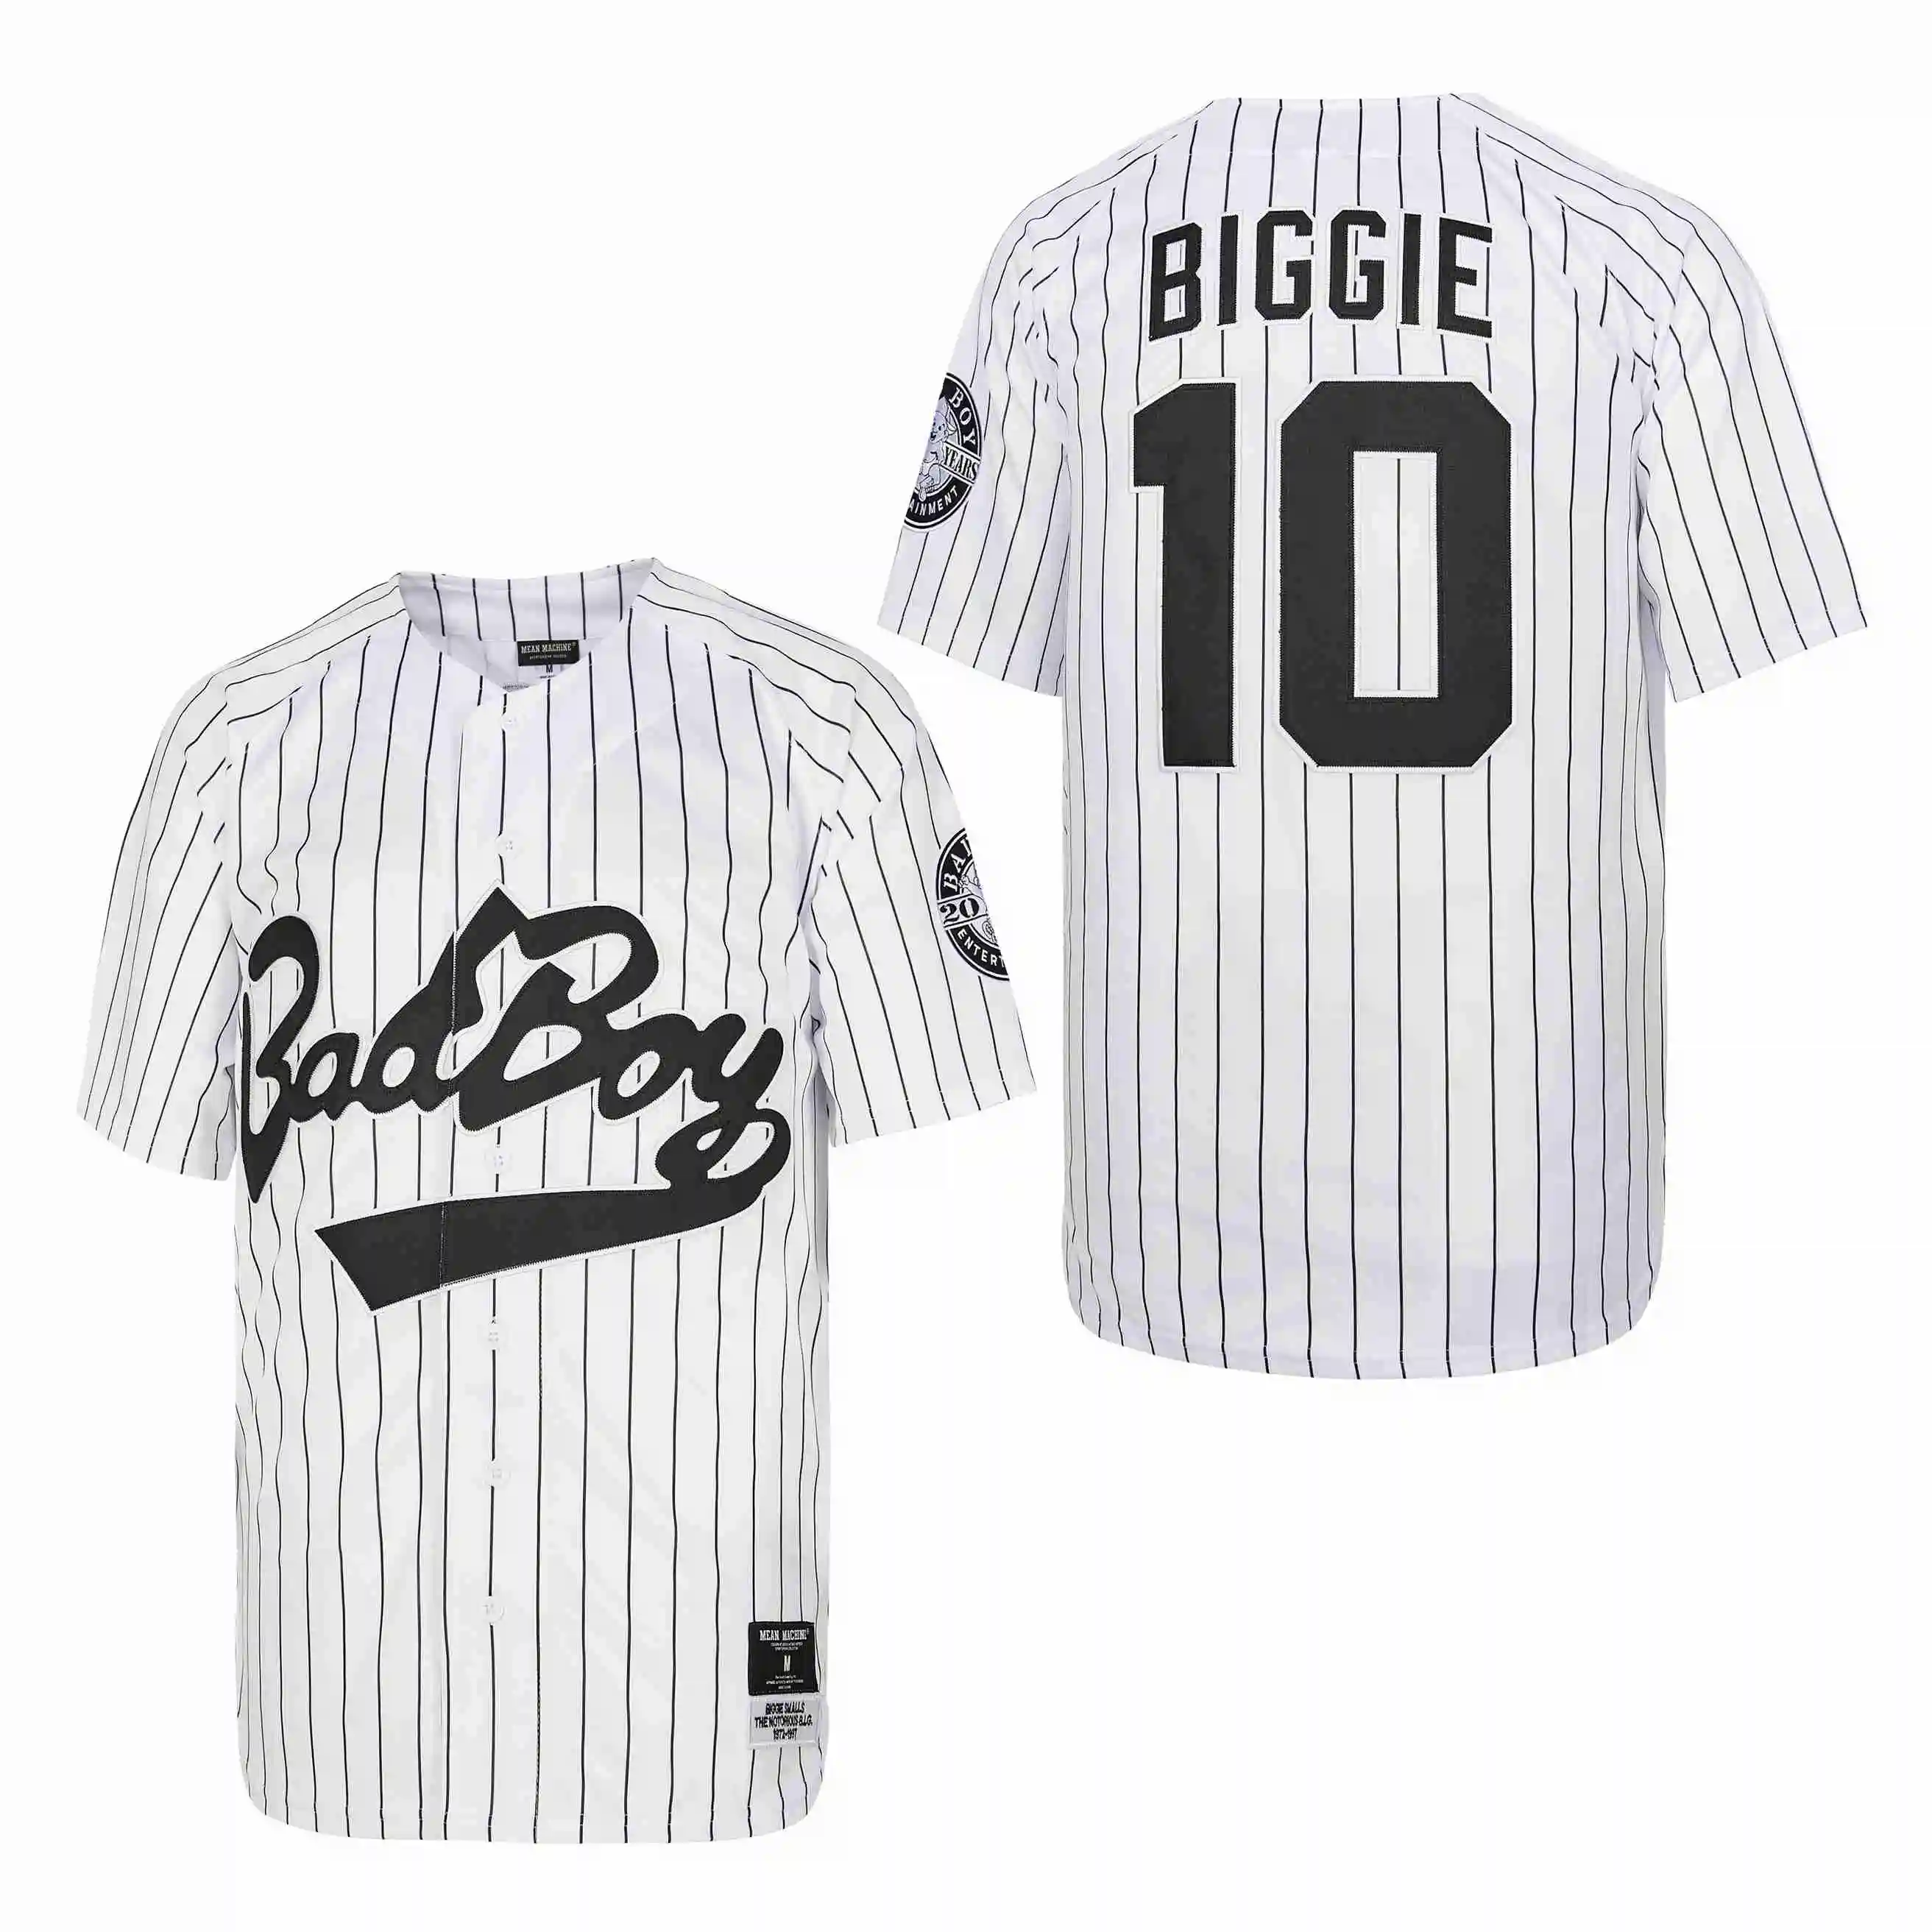 

Трикотажные изделия для бейсбола, Biggie Smalls 10 Bad Boy, известная большая Джерси с вышивкой, уличная спортивная одежда в стиле хип-хоп, белая полос...